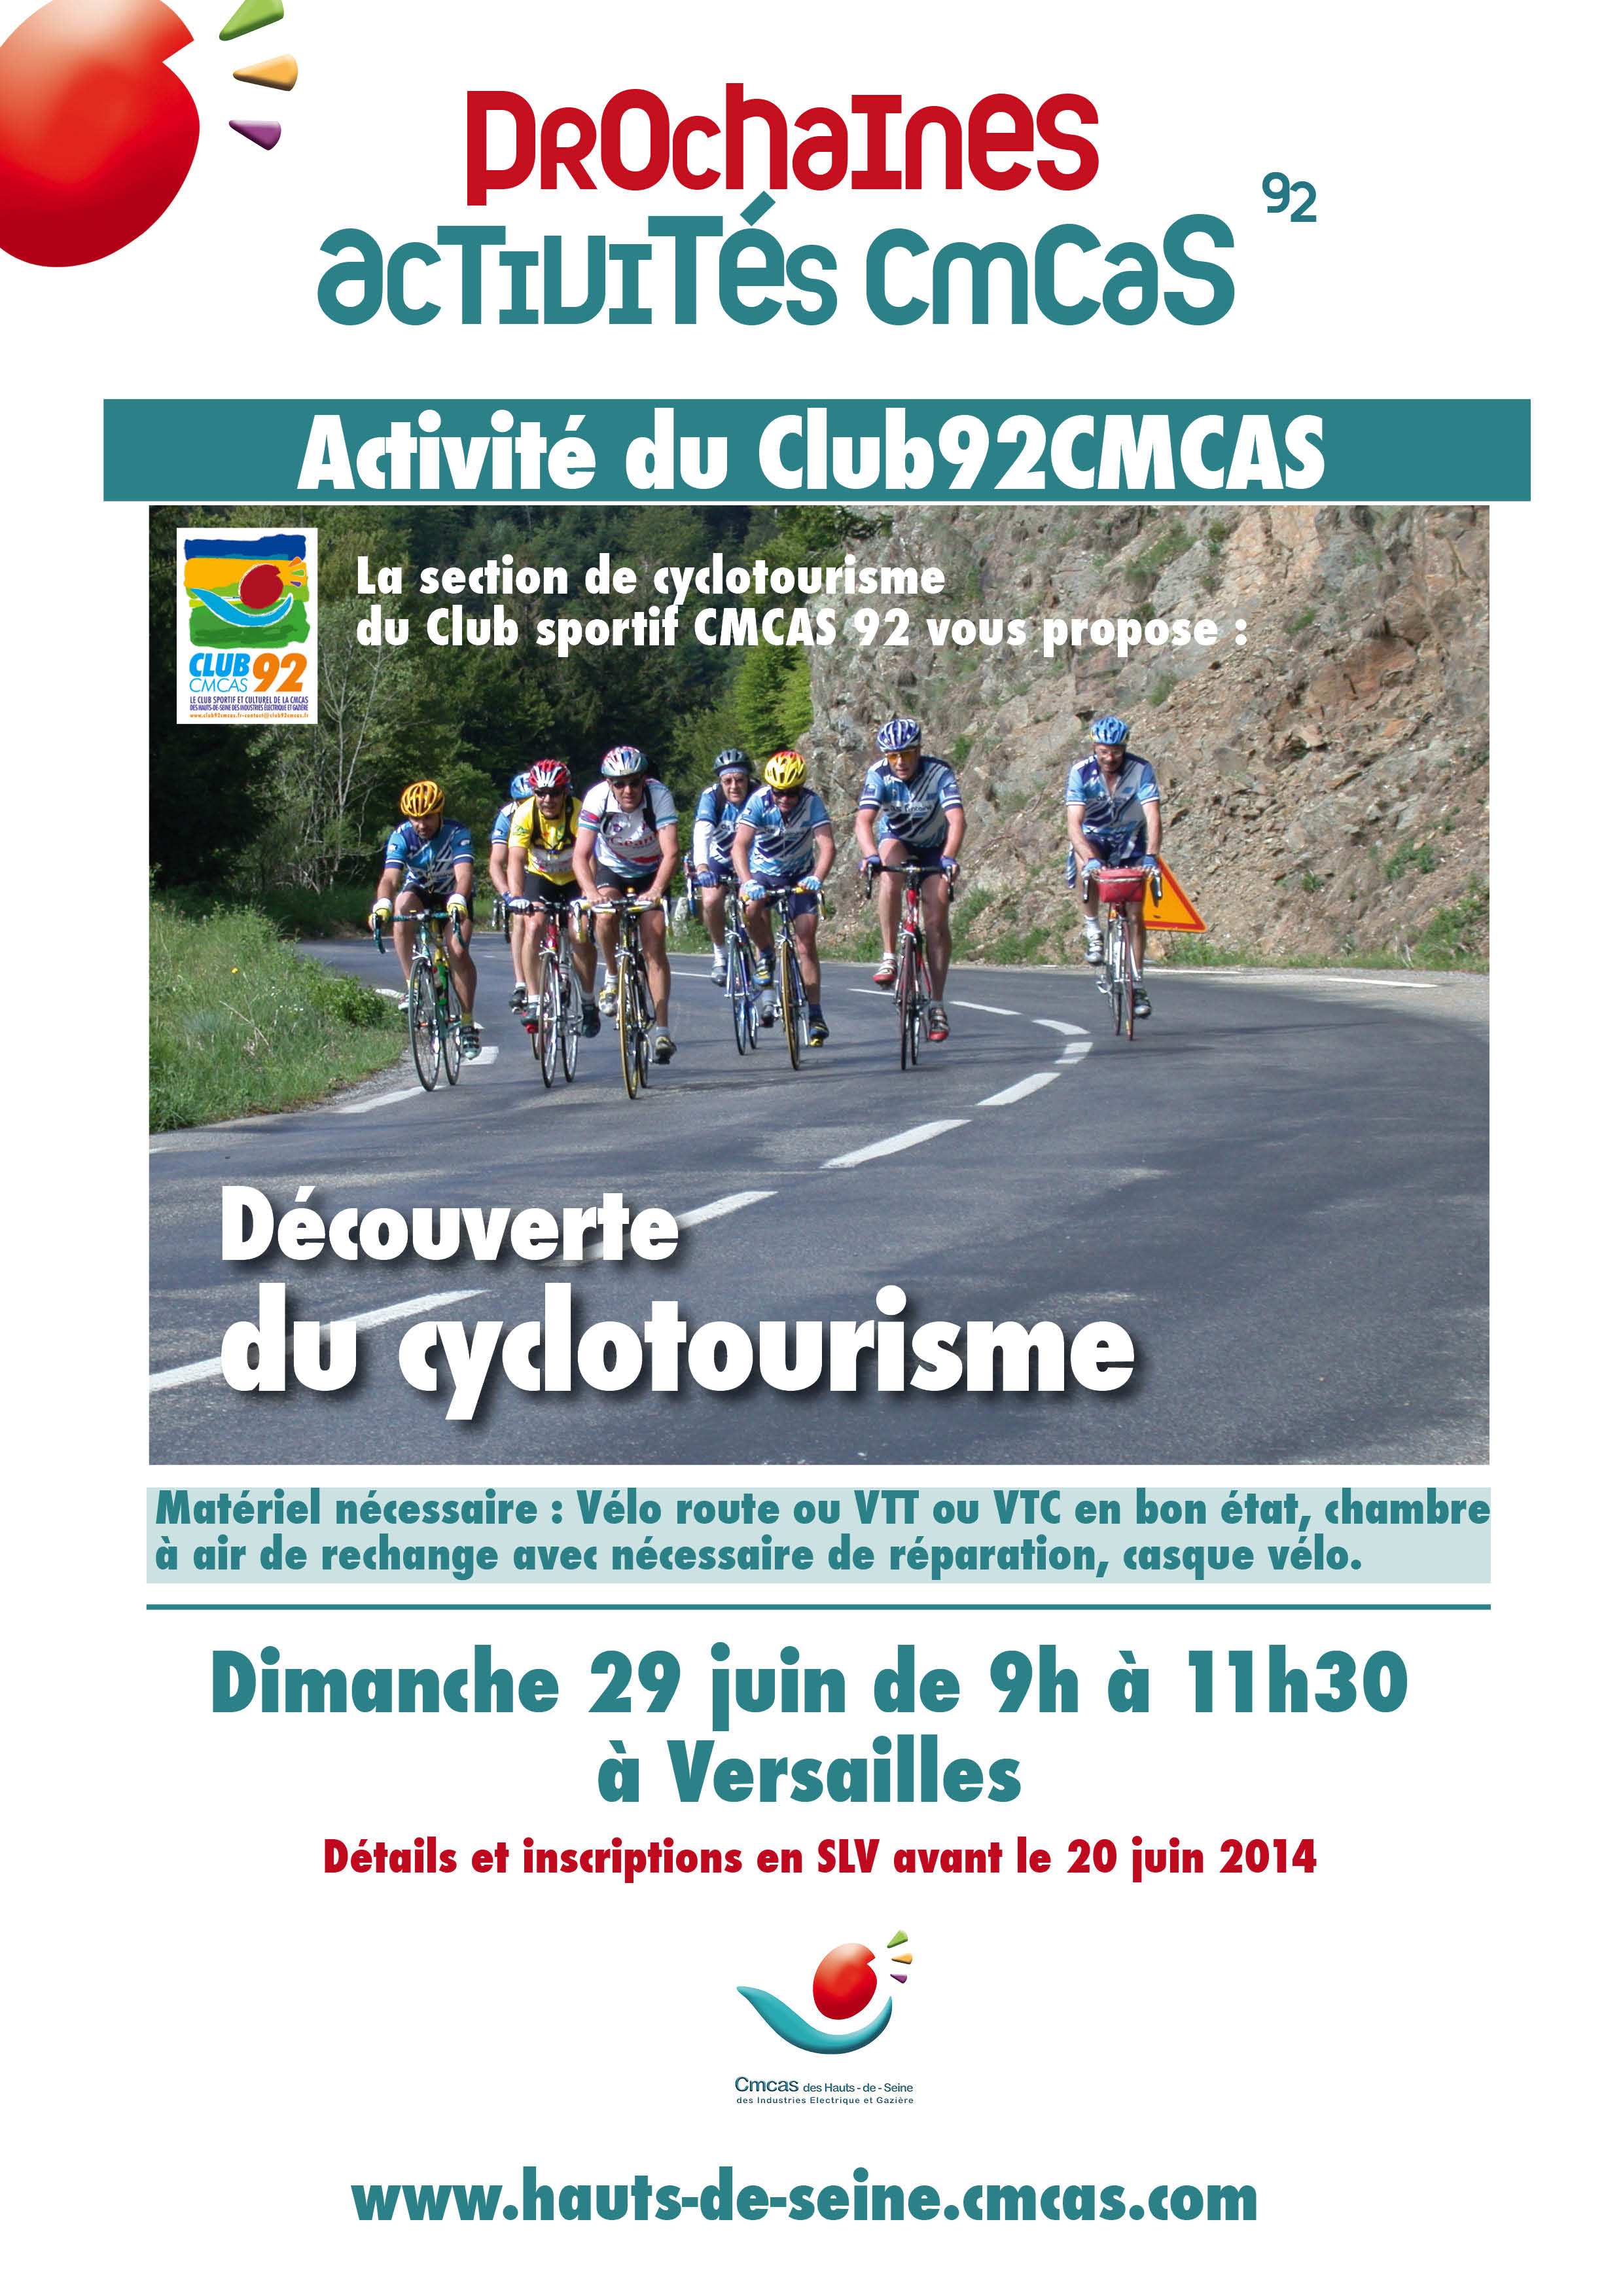 Découverte du cyclotourisme le dimanche 29 juin de 9h à 11h30 à Versailles